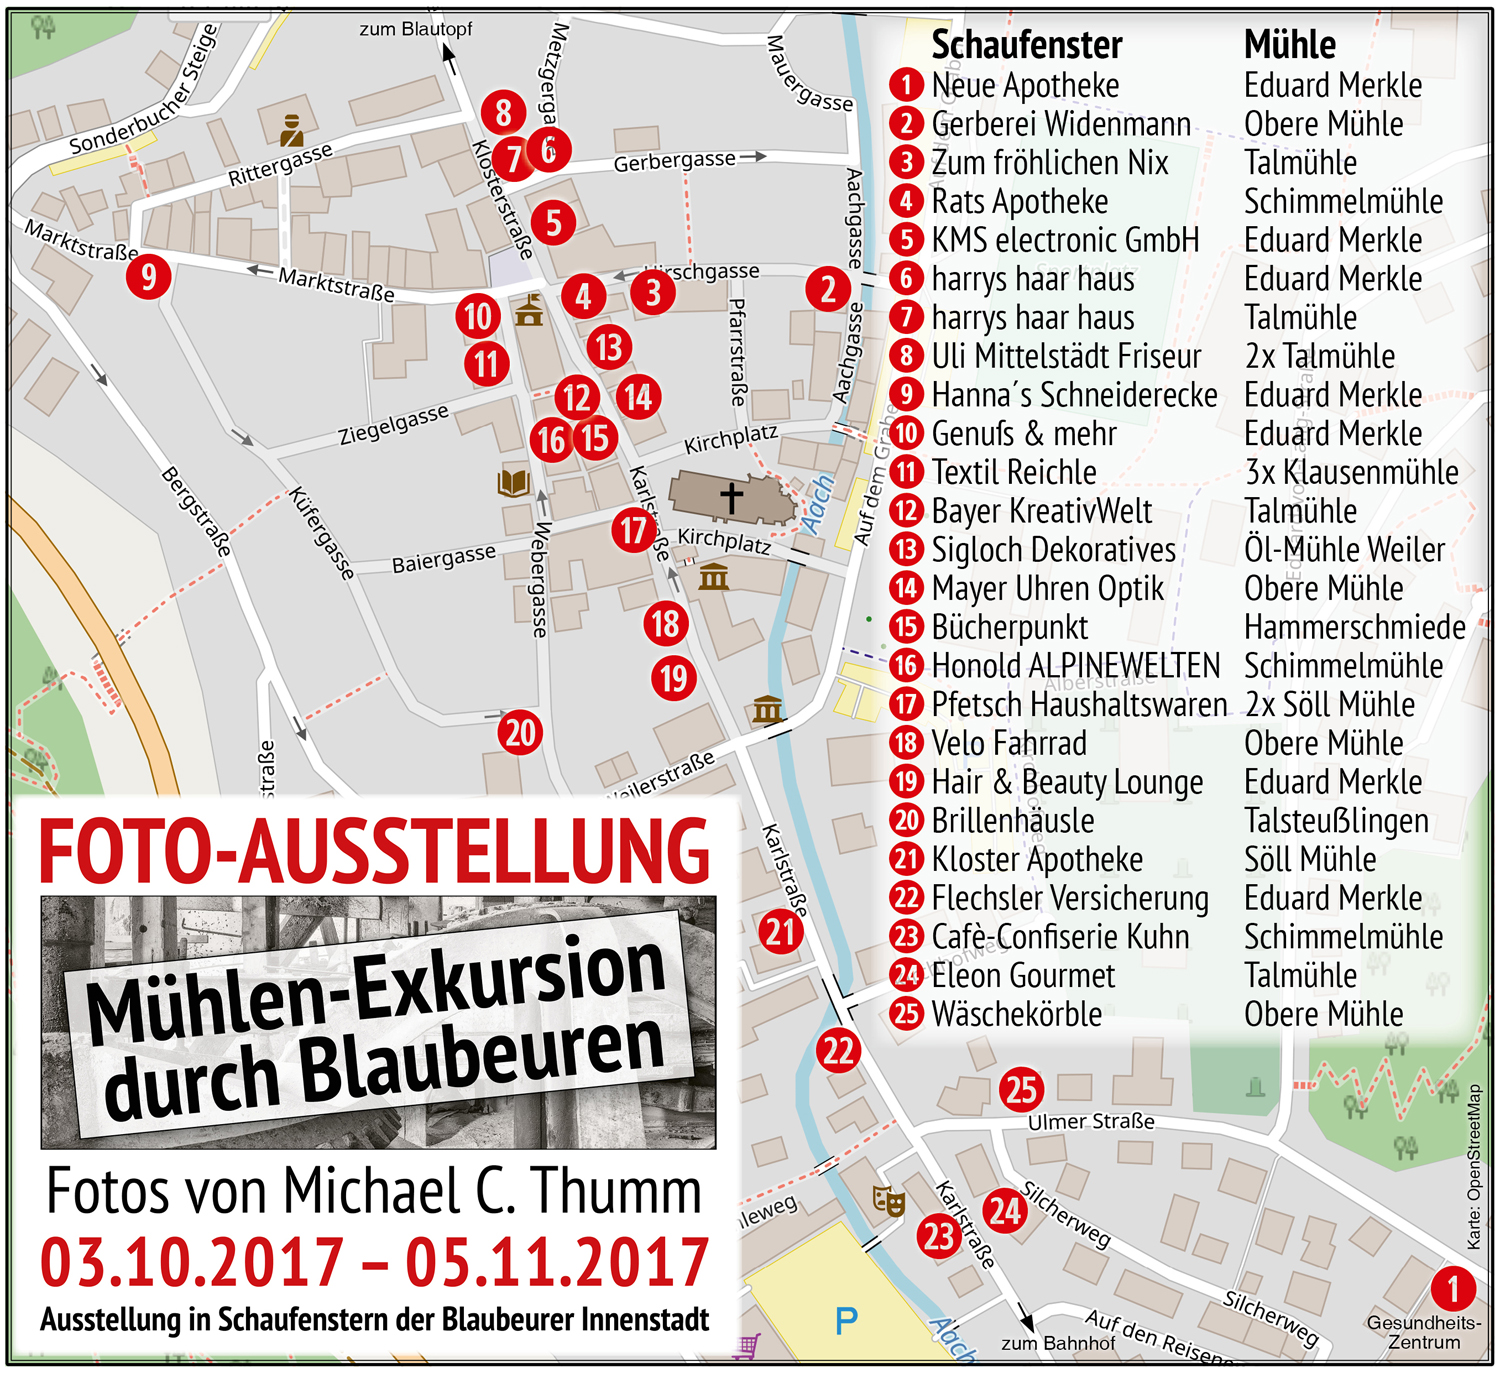 Übersichtsplan der 25 Ausstellungsorte, Fotoausstellung Mühlen-Exkursion durch Blaubeuren 2017